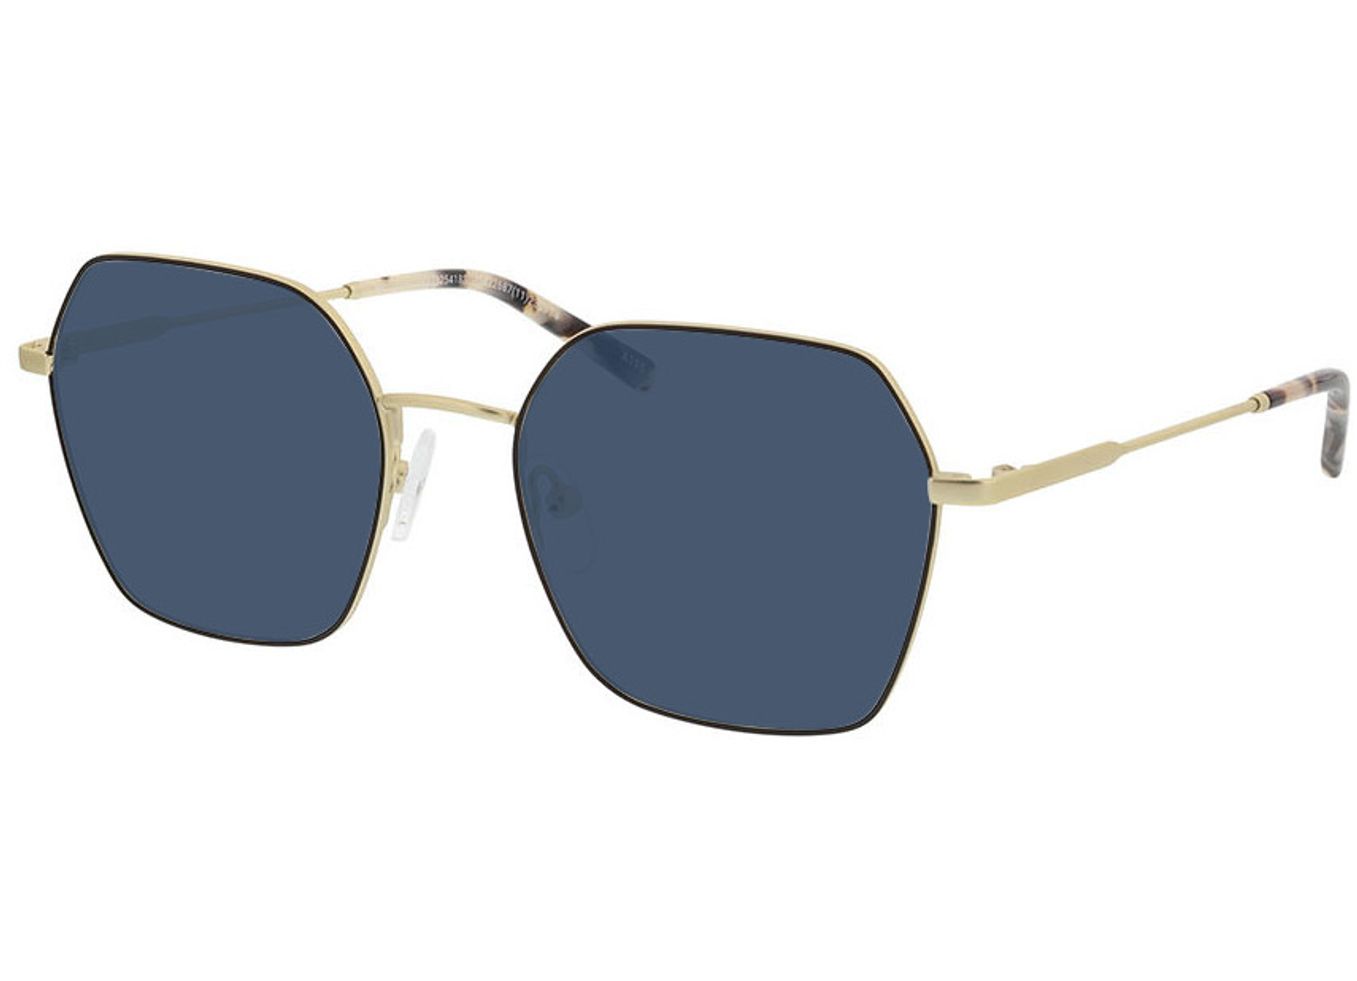 Miranda - gold/schwarz Sonnenbrille mit Sehstärke, Vollrand, geometric von Brille24 Collection